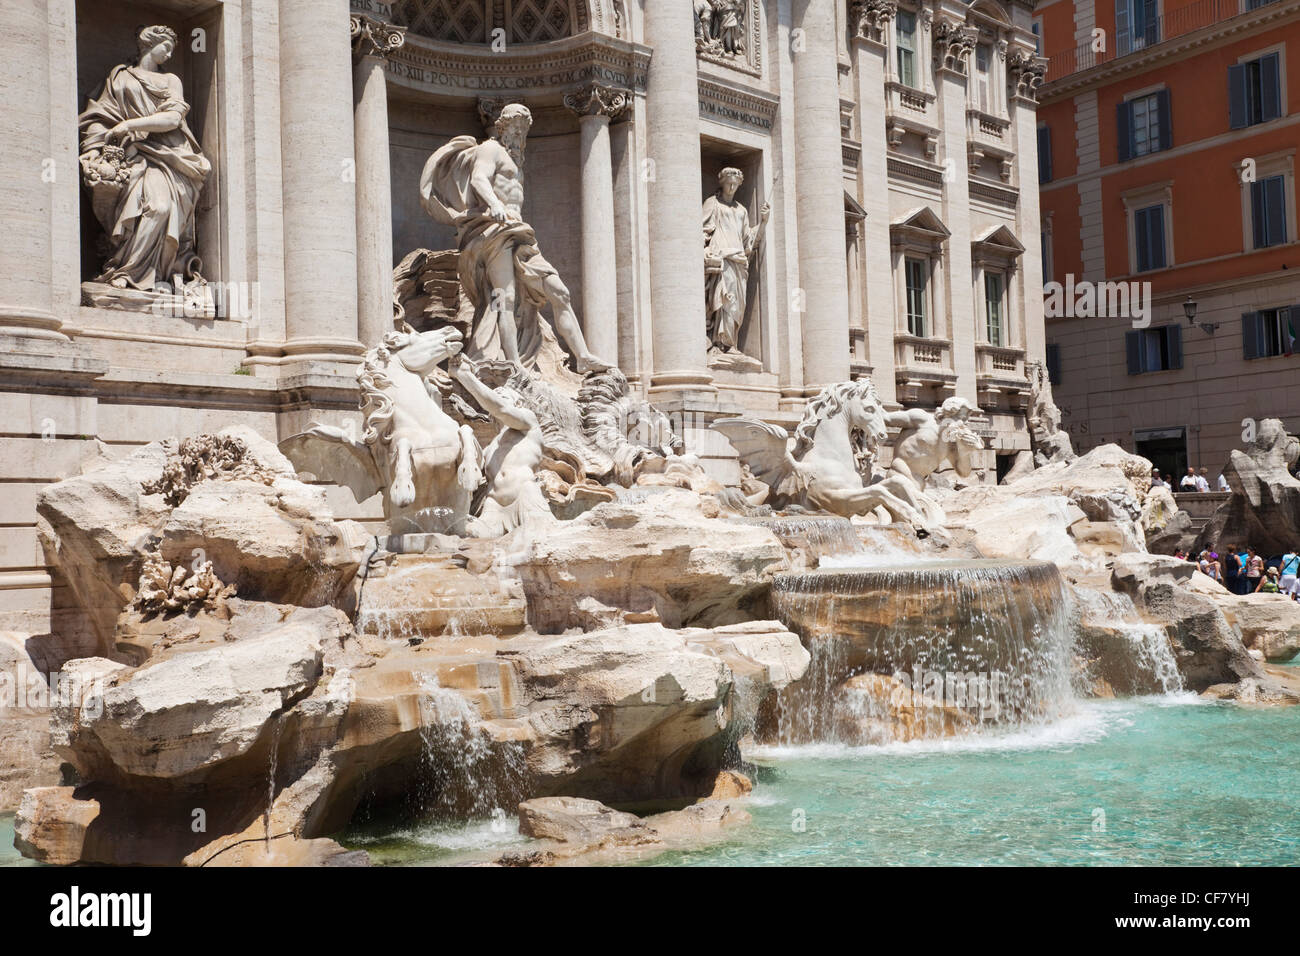 L'Europe, Italie, Rome, la Fontaine de Trevi, fontaine, Neptune, Nicola Salvi, Tourisme, vacances, voyages, locations Banque D'Images